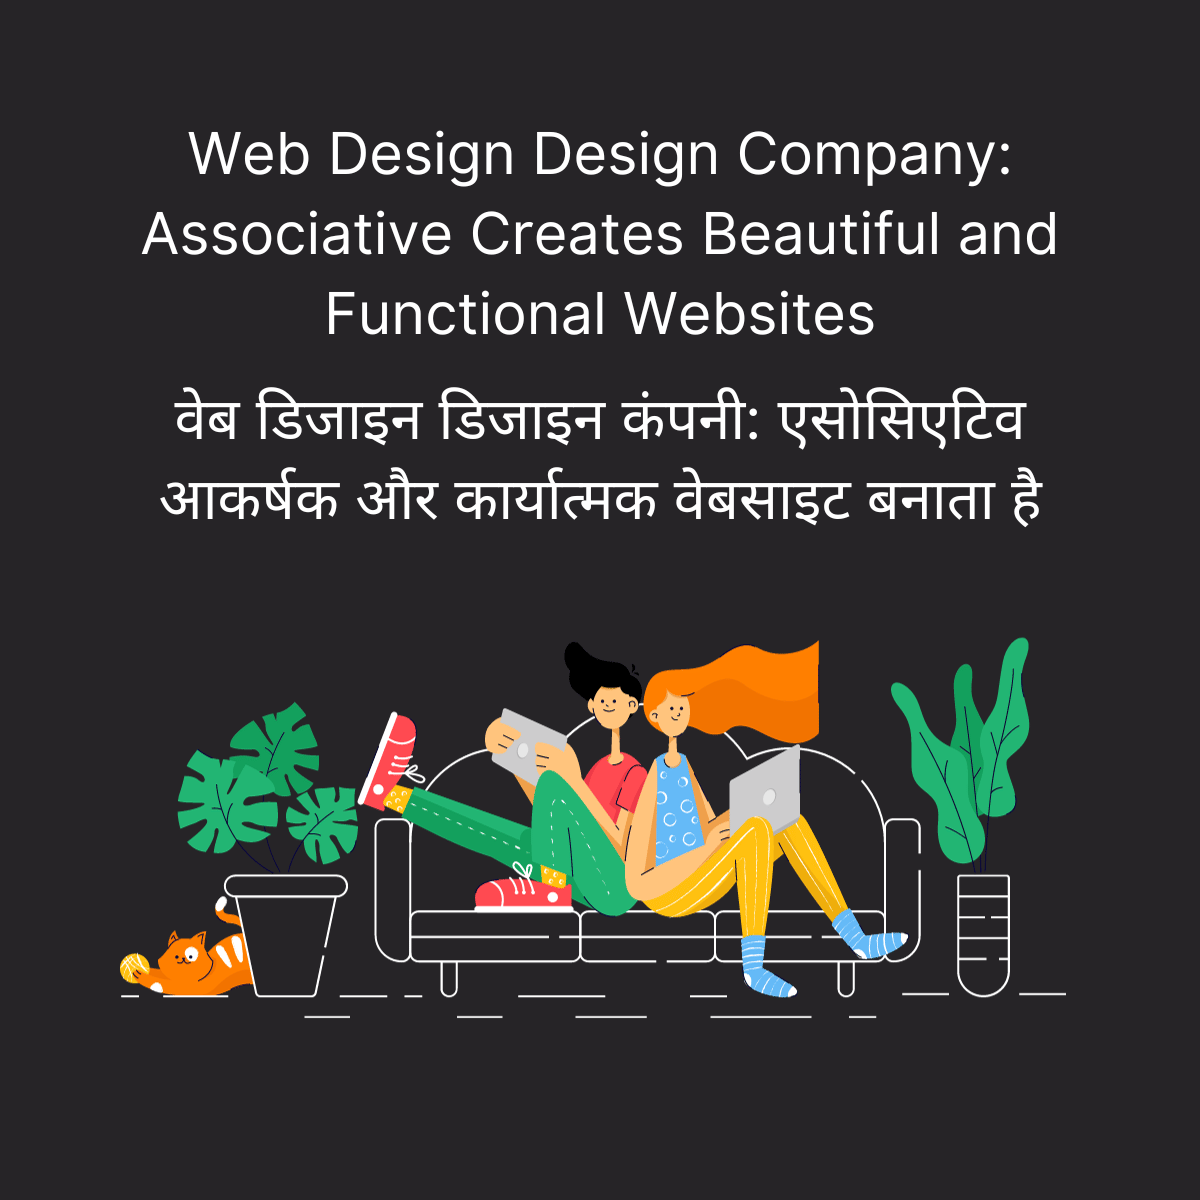 Web Design Design Company: Associative Creates Beautiful and Functional Websites वेब डिजाइन डिजाइन कंपनी: एसोसिएटिव आकर्षक और कार्यात्मक वेबसाइट बनाता है